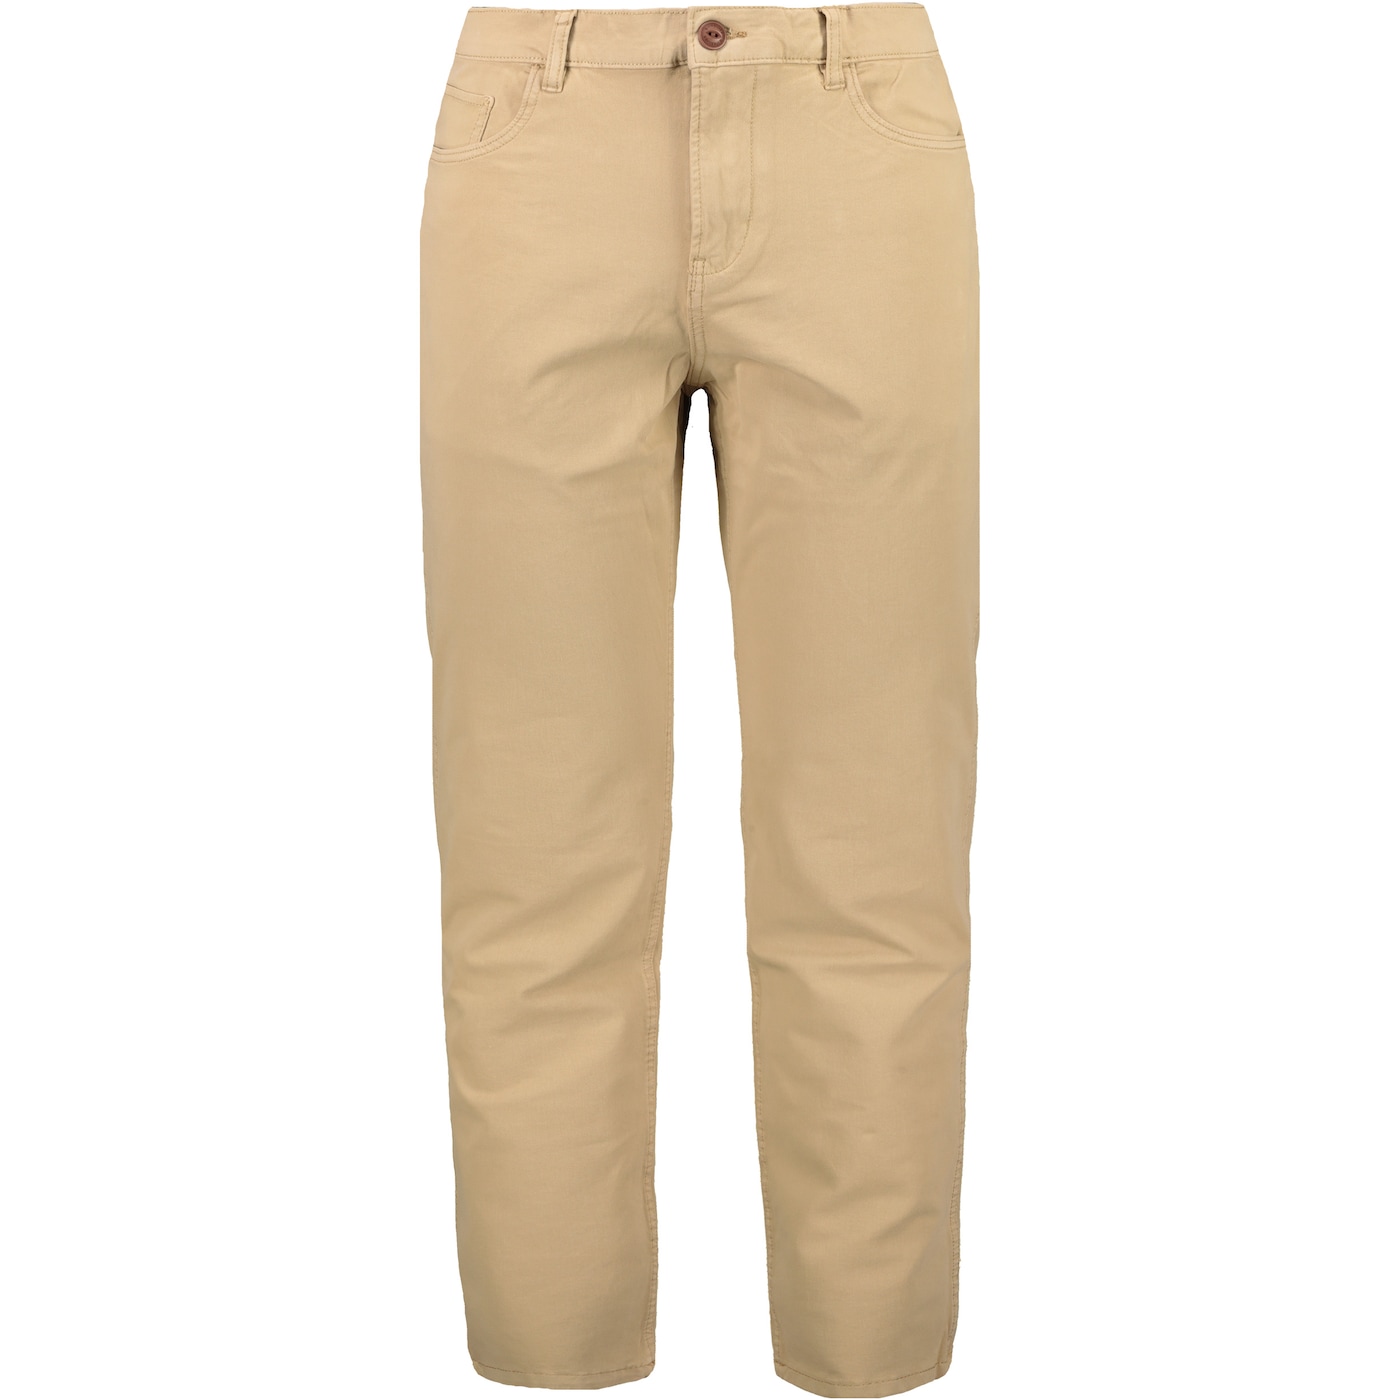 Мъже  Мъжко облекло  Панталони  едноцветни Панталони Men’s Trousers QUIKSILVER KRANDY 939958-5830012